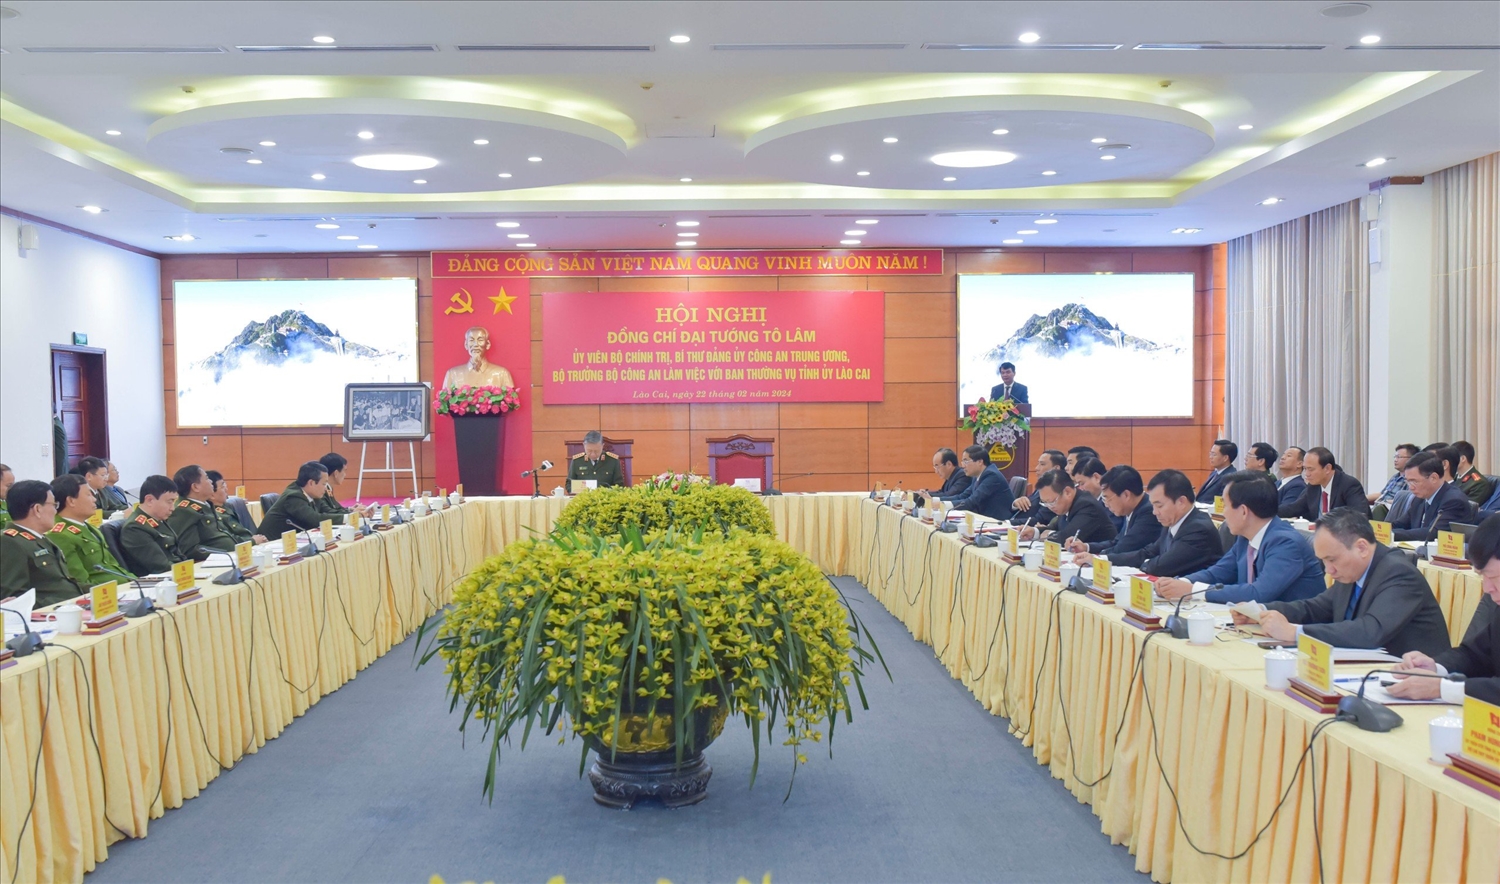 Sau 3 năm triển khai Nghị quyết Đại hội lần thứ XIII của Đảng và Nghị quyết Đại hội đảng các cấp nhiệm kỳ 2020 - 2025, tốc độ tăng trưởng kinh tế của Lào Cai duy trì ở mức tích cực